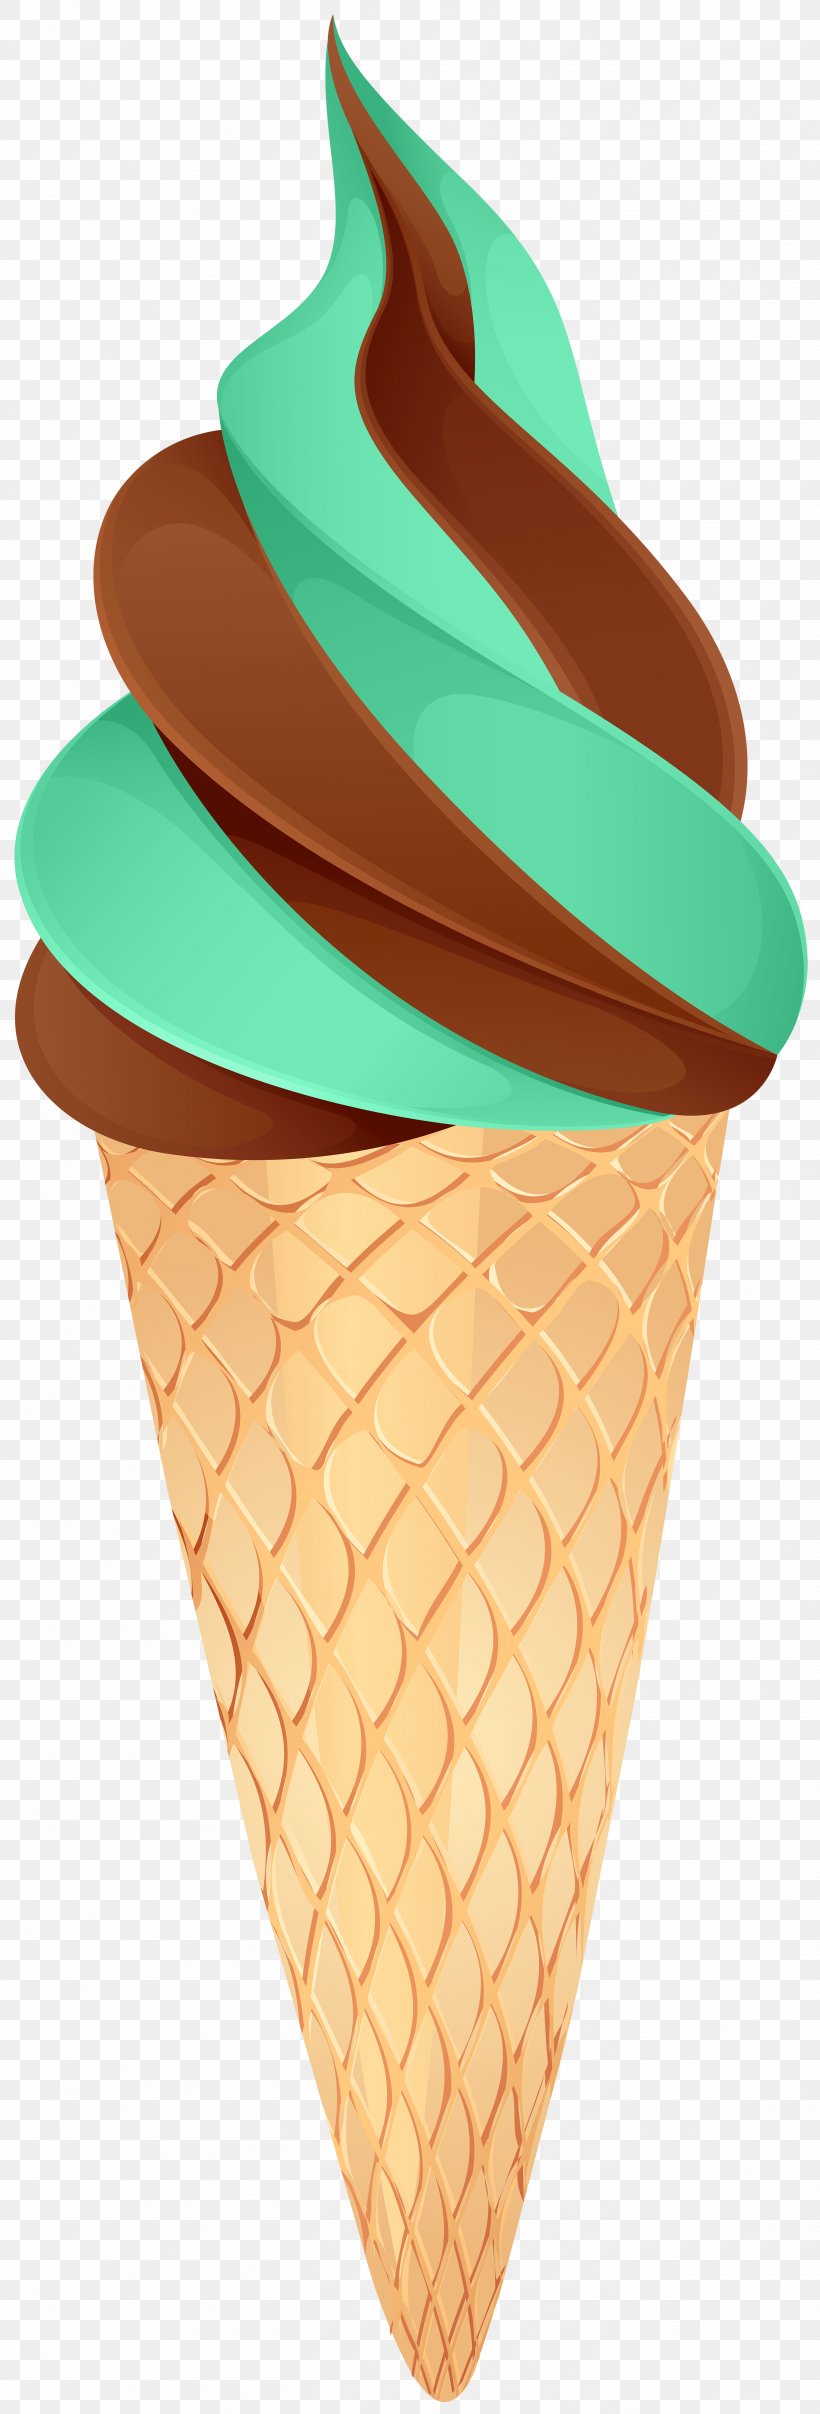 Chocolate Ice Cream Ice Cream Cones Image Clip Art, PNG, 2717x8000px, Ice Cream, Blue, Chocolate, Chocolate Ice Cream, Color Download Free